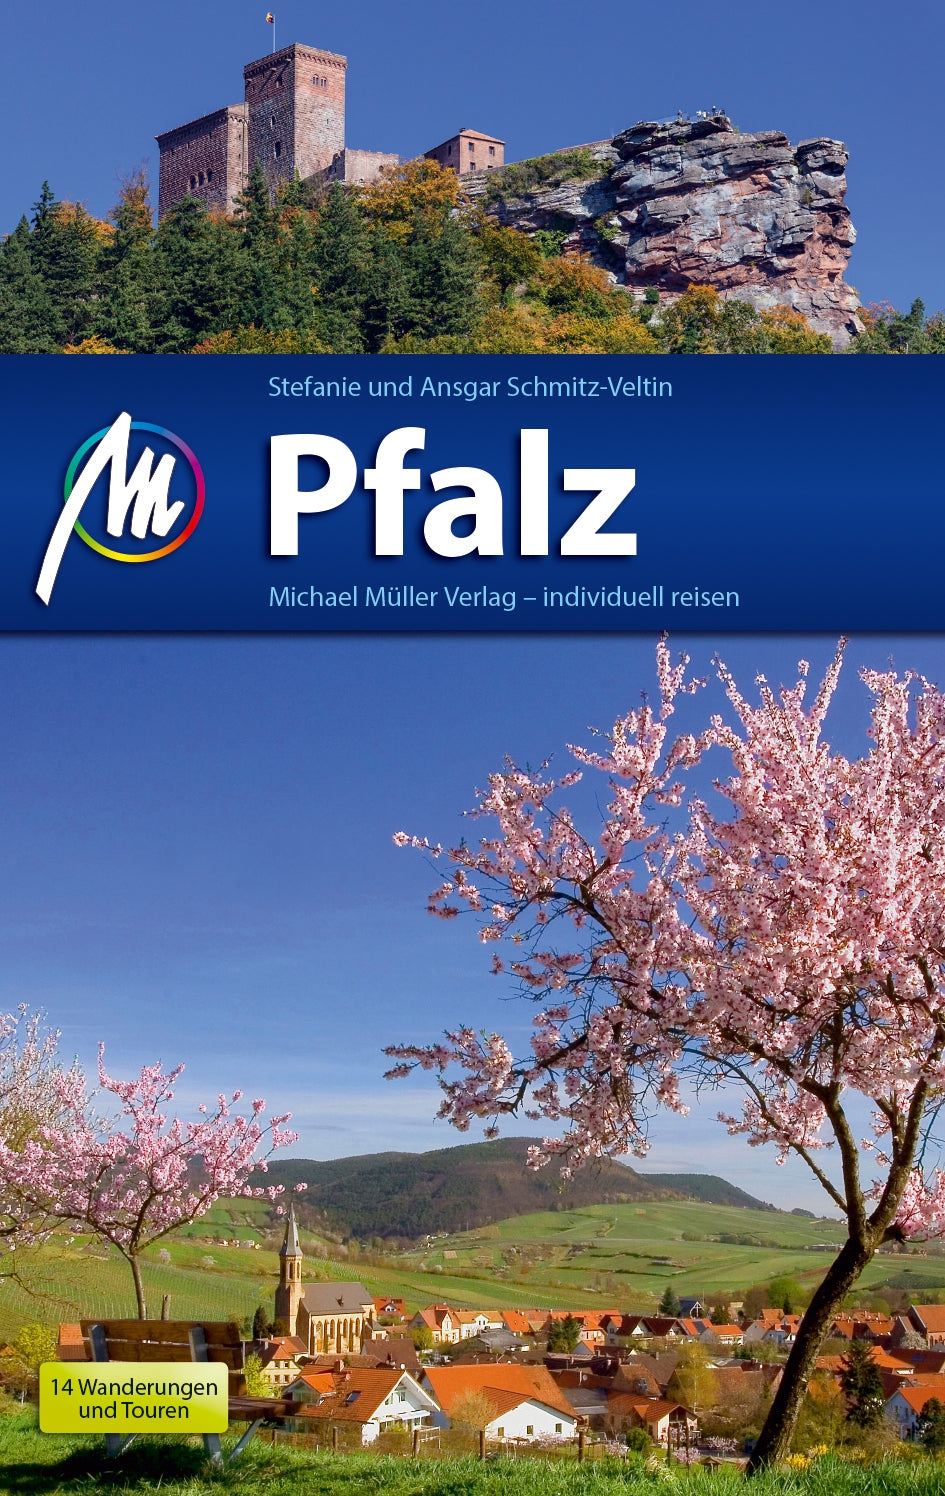 Pfalz 5.A 2020